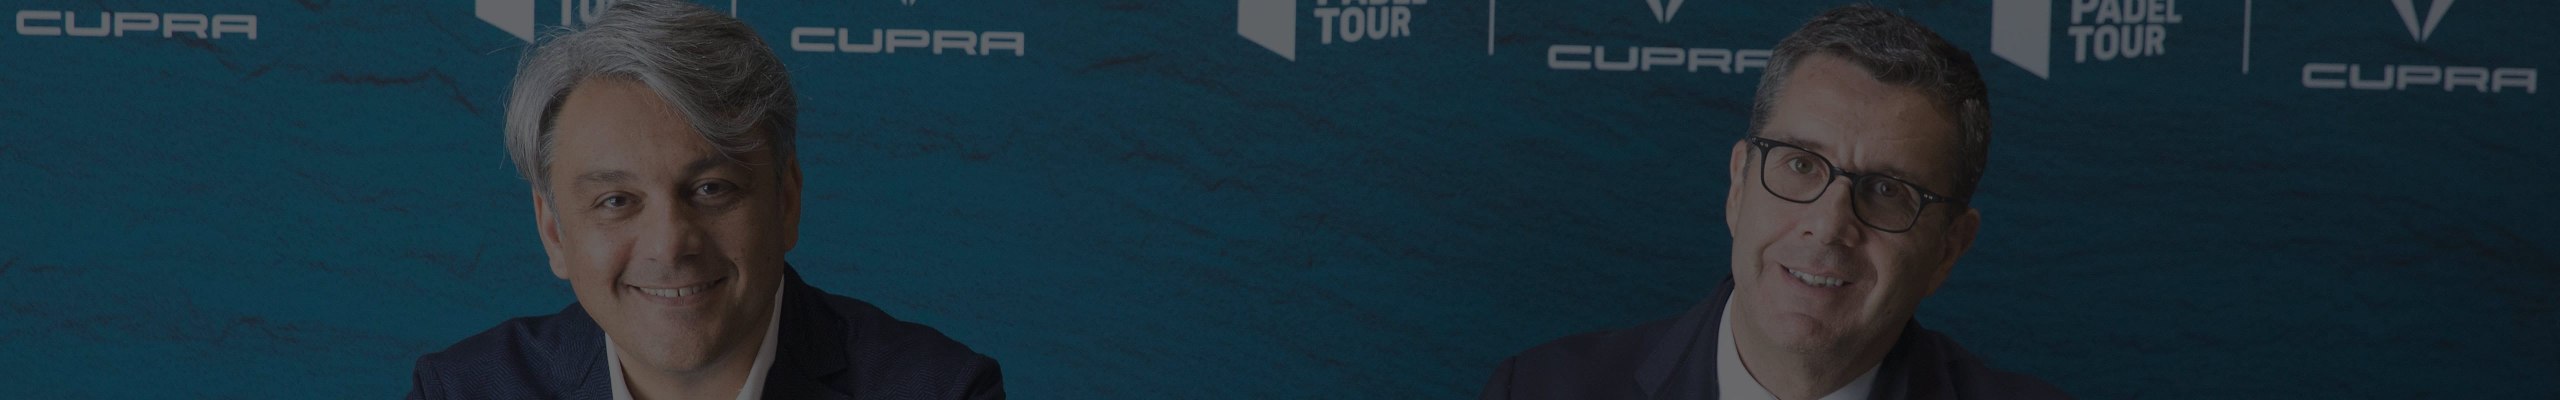 CUPRA s'associe au World Padel Tour jusqu'en 2021